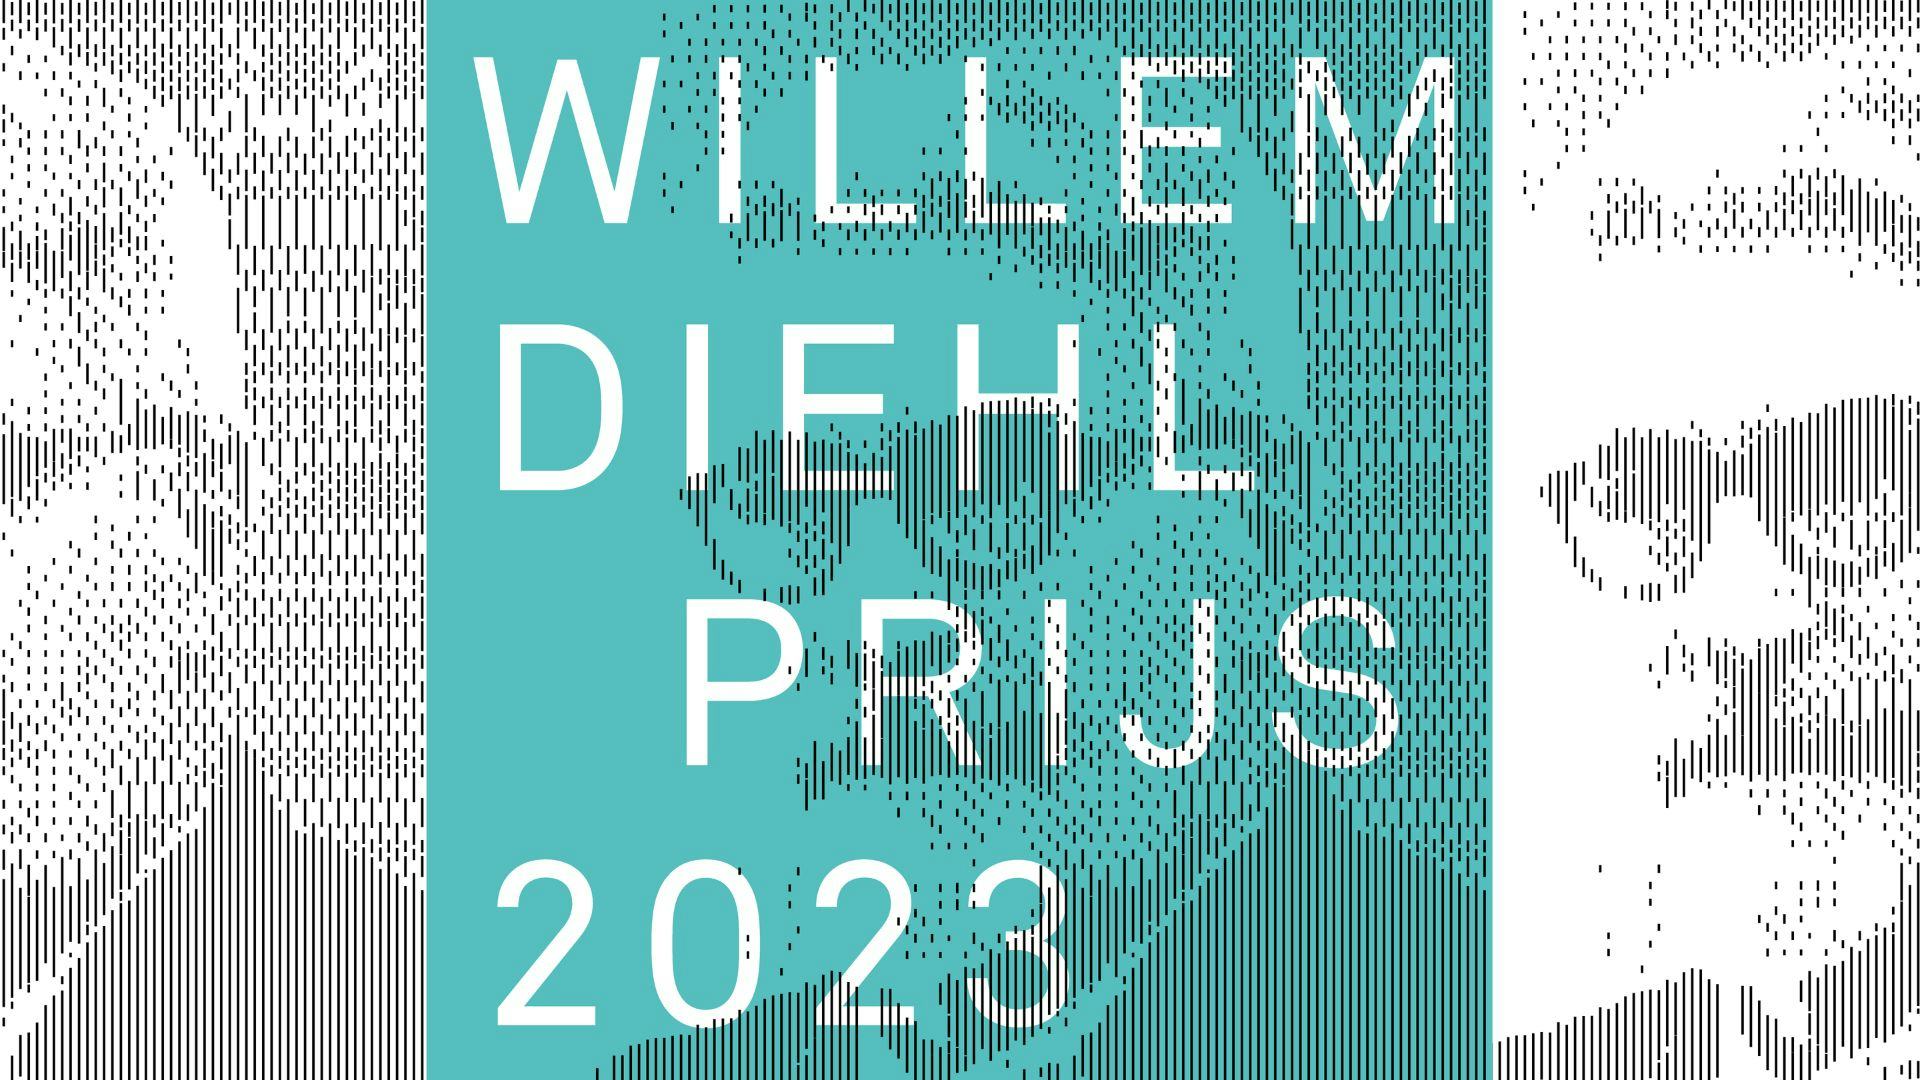 Aanmelding Willem Diehlprijs 2023 geopend